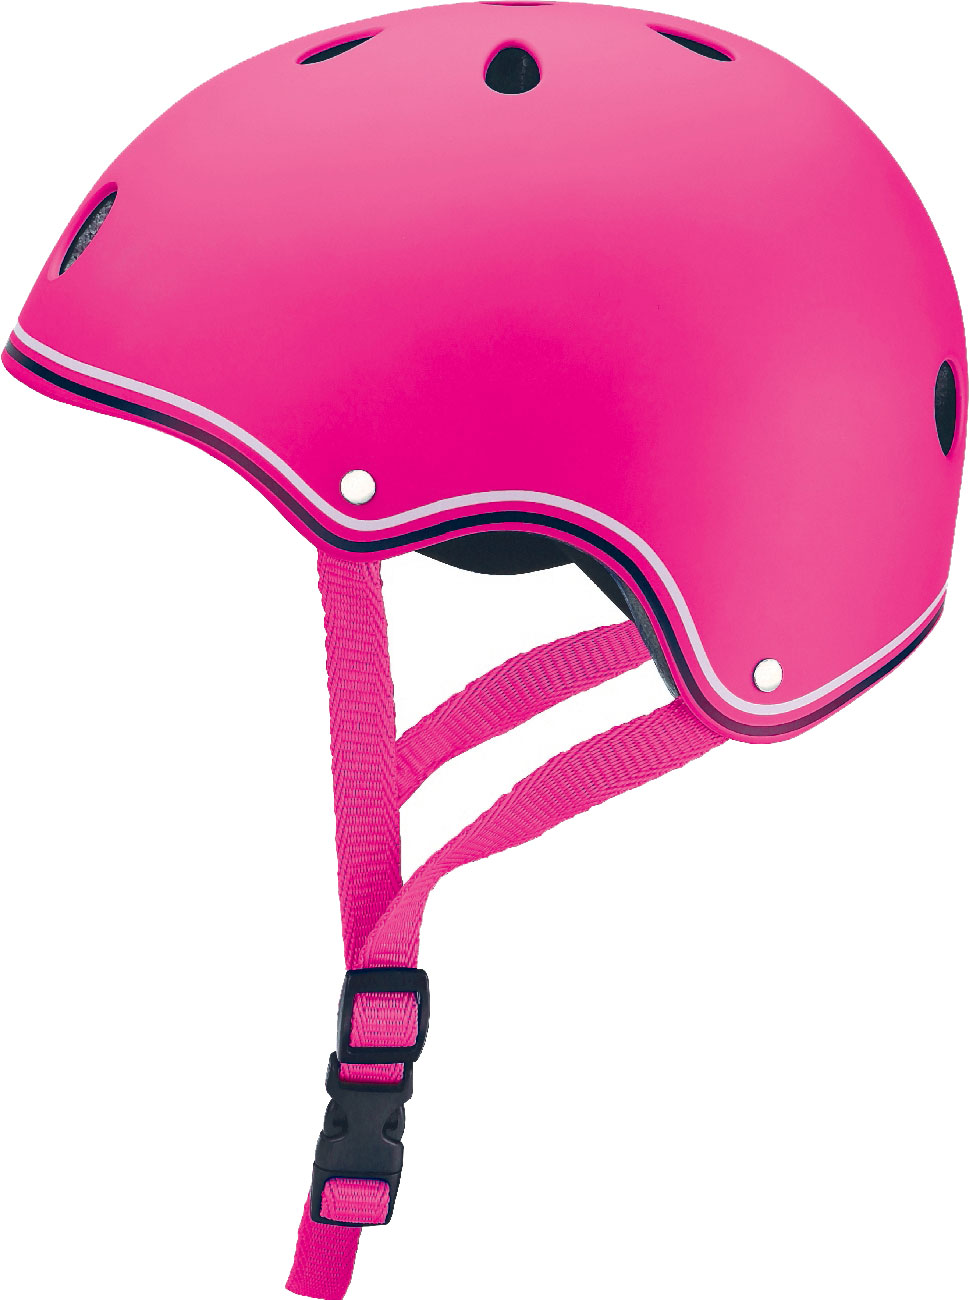 Шлем Junior размер XXS/XS 48-51 см., розовый  